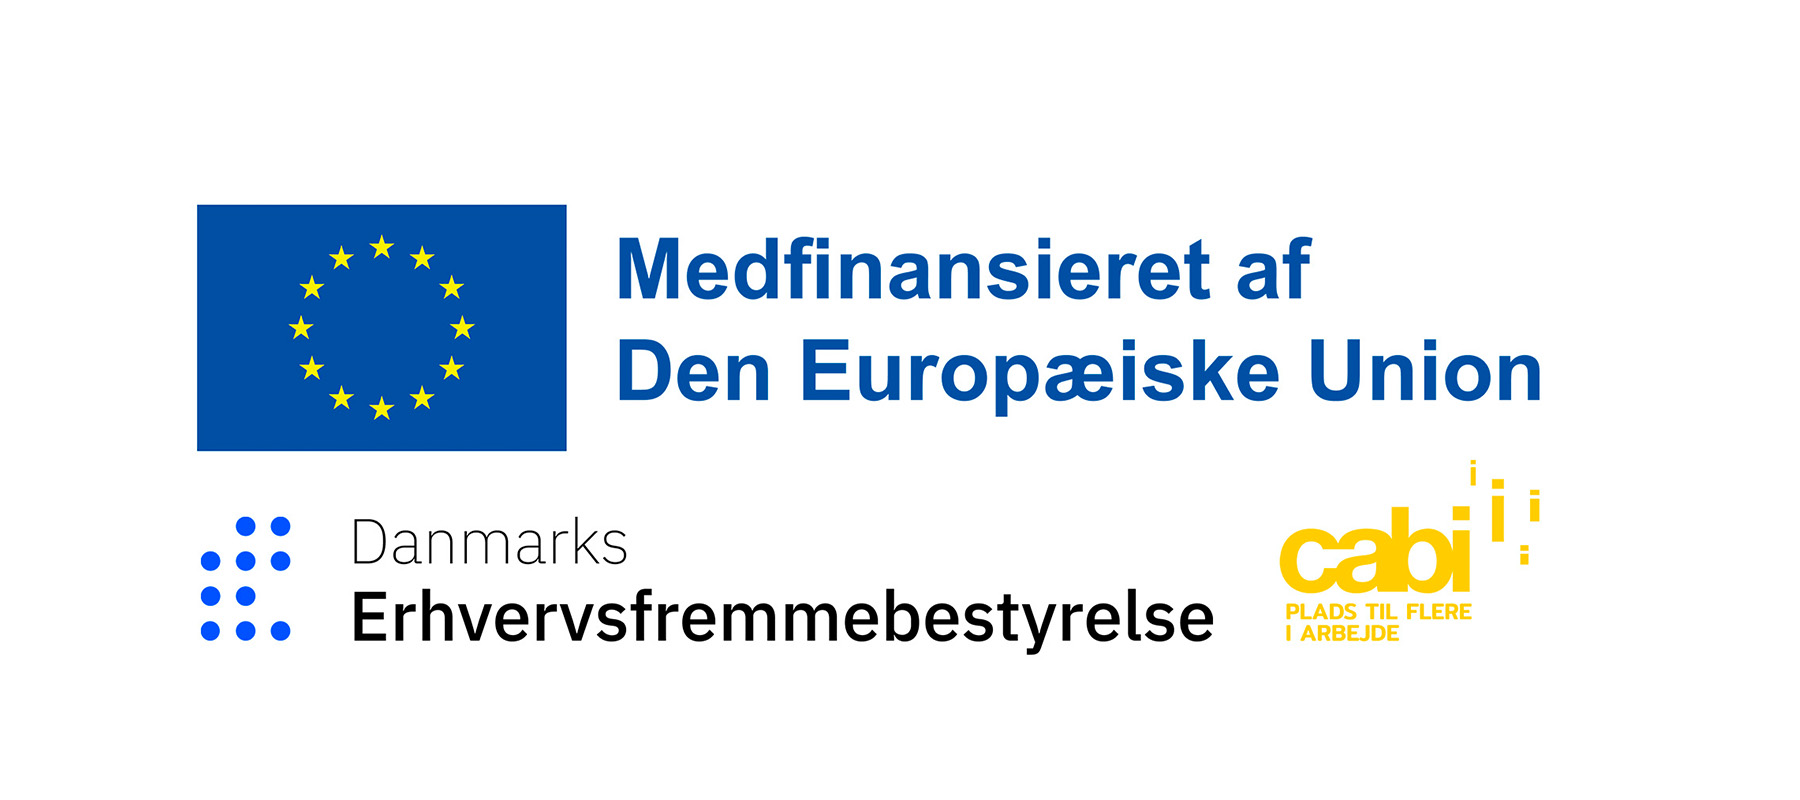 Logoer EU, Danmarks Erhvervsfremmebestyrelse og Cabi